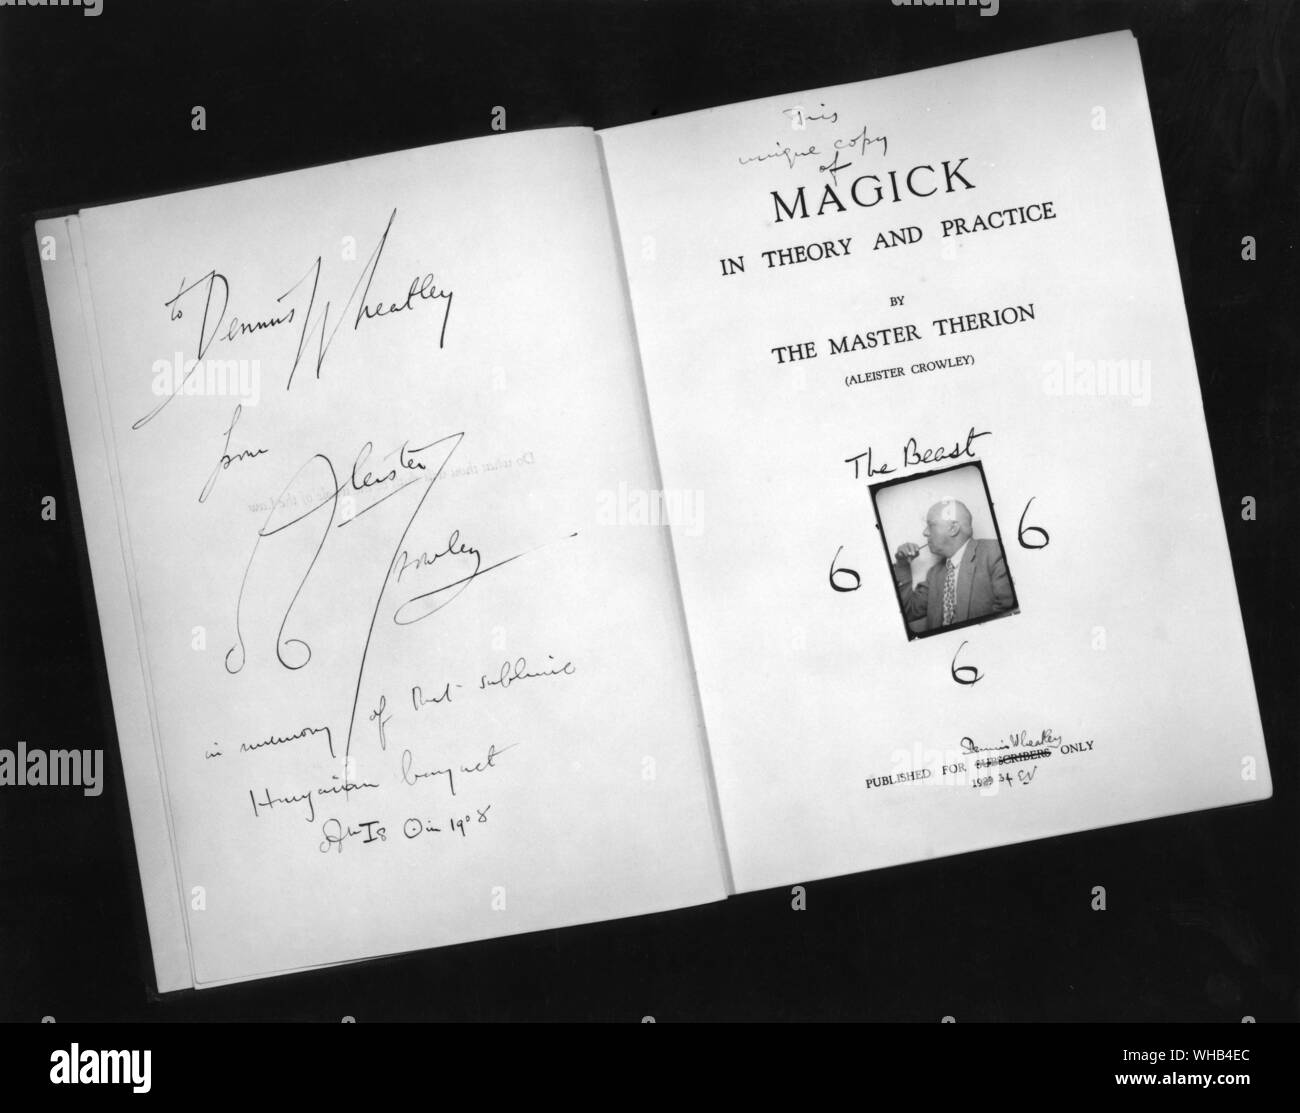 Dieses einzigartige Kopie der Magick in Theorie und Praxis durch den Master Therion (Aleister Crowley) das Tier 666, veröffentlicht für Dennis Wheatley nur 1934 - eingeschrieben Dennis Wheatley von Aleister Crowley zur Erinnerung an die erhabenen Ungarischen Bankett in 1928.. Stockfoto